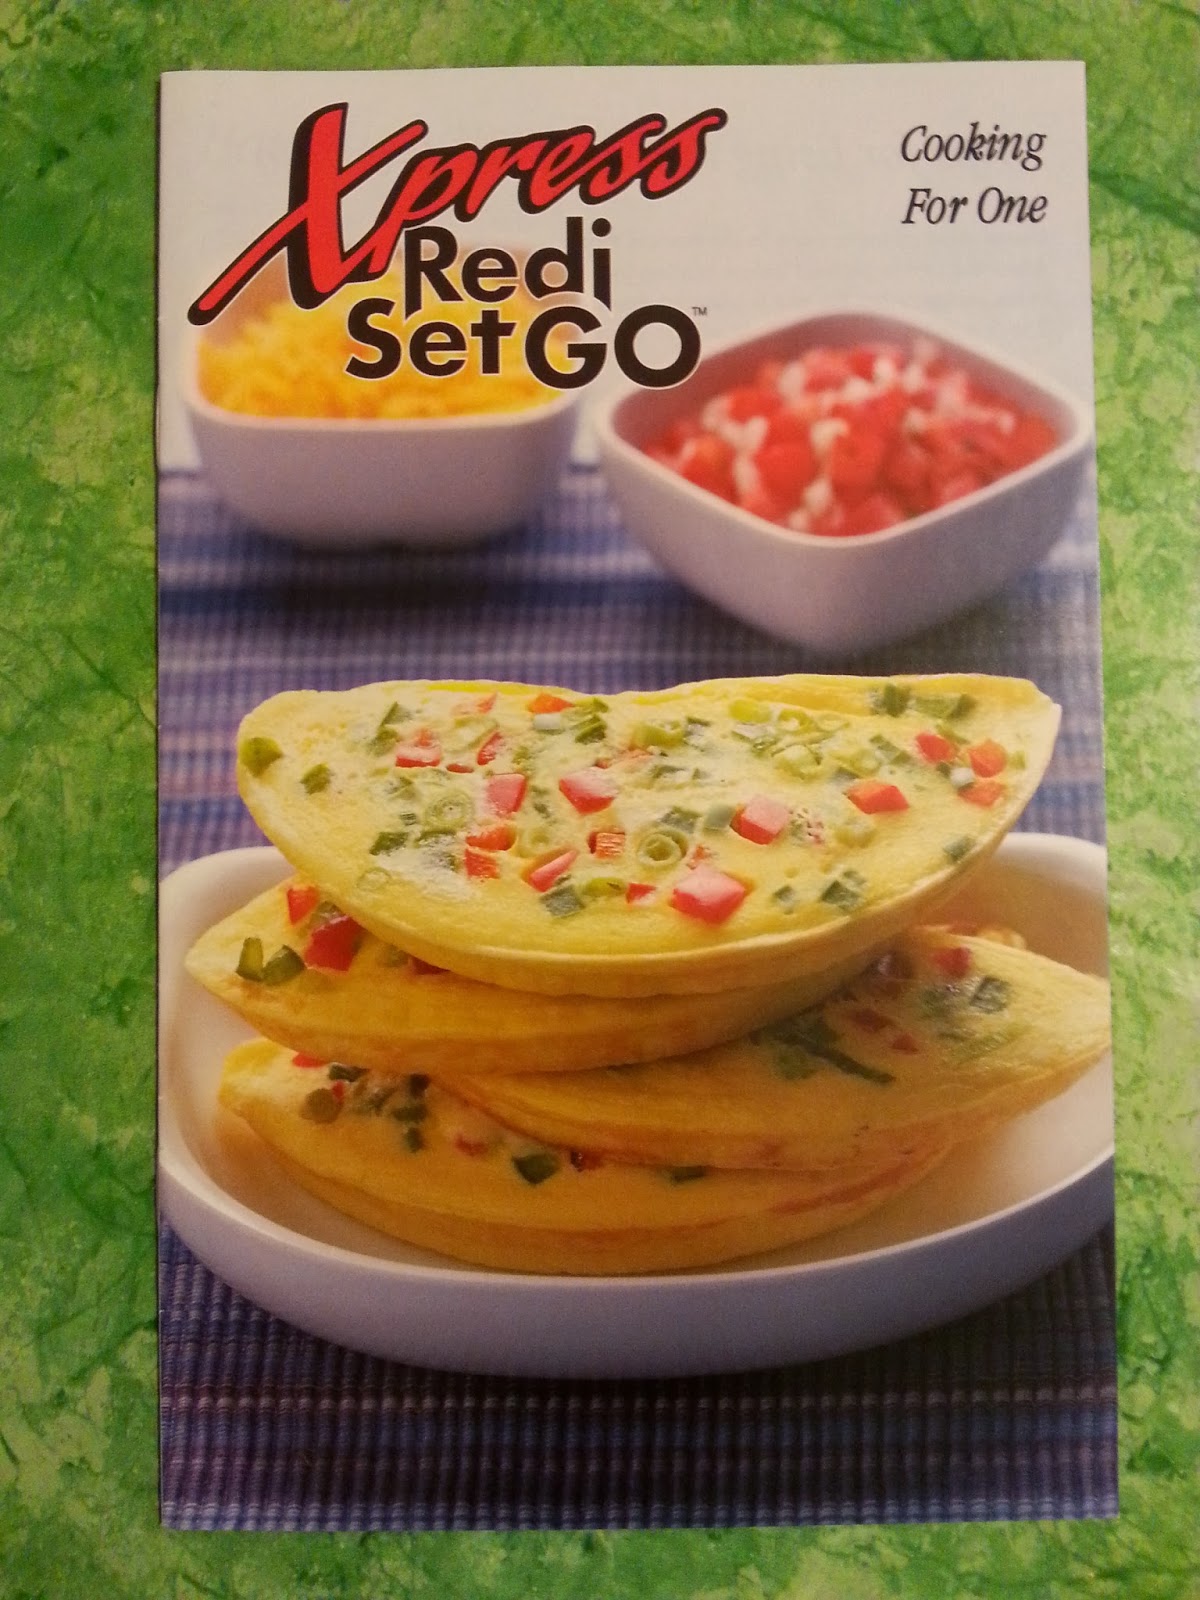 Xpress Redi Set Go Cooker Recipes |.